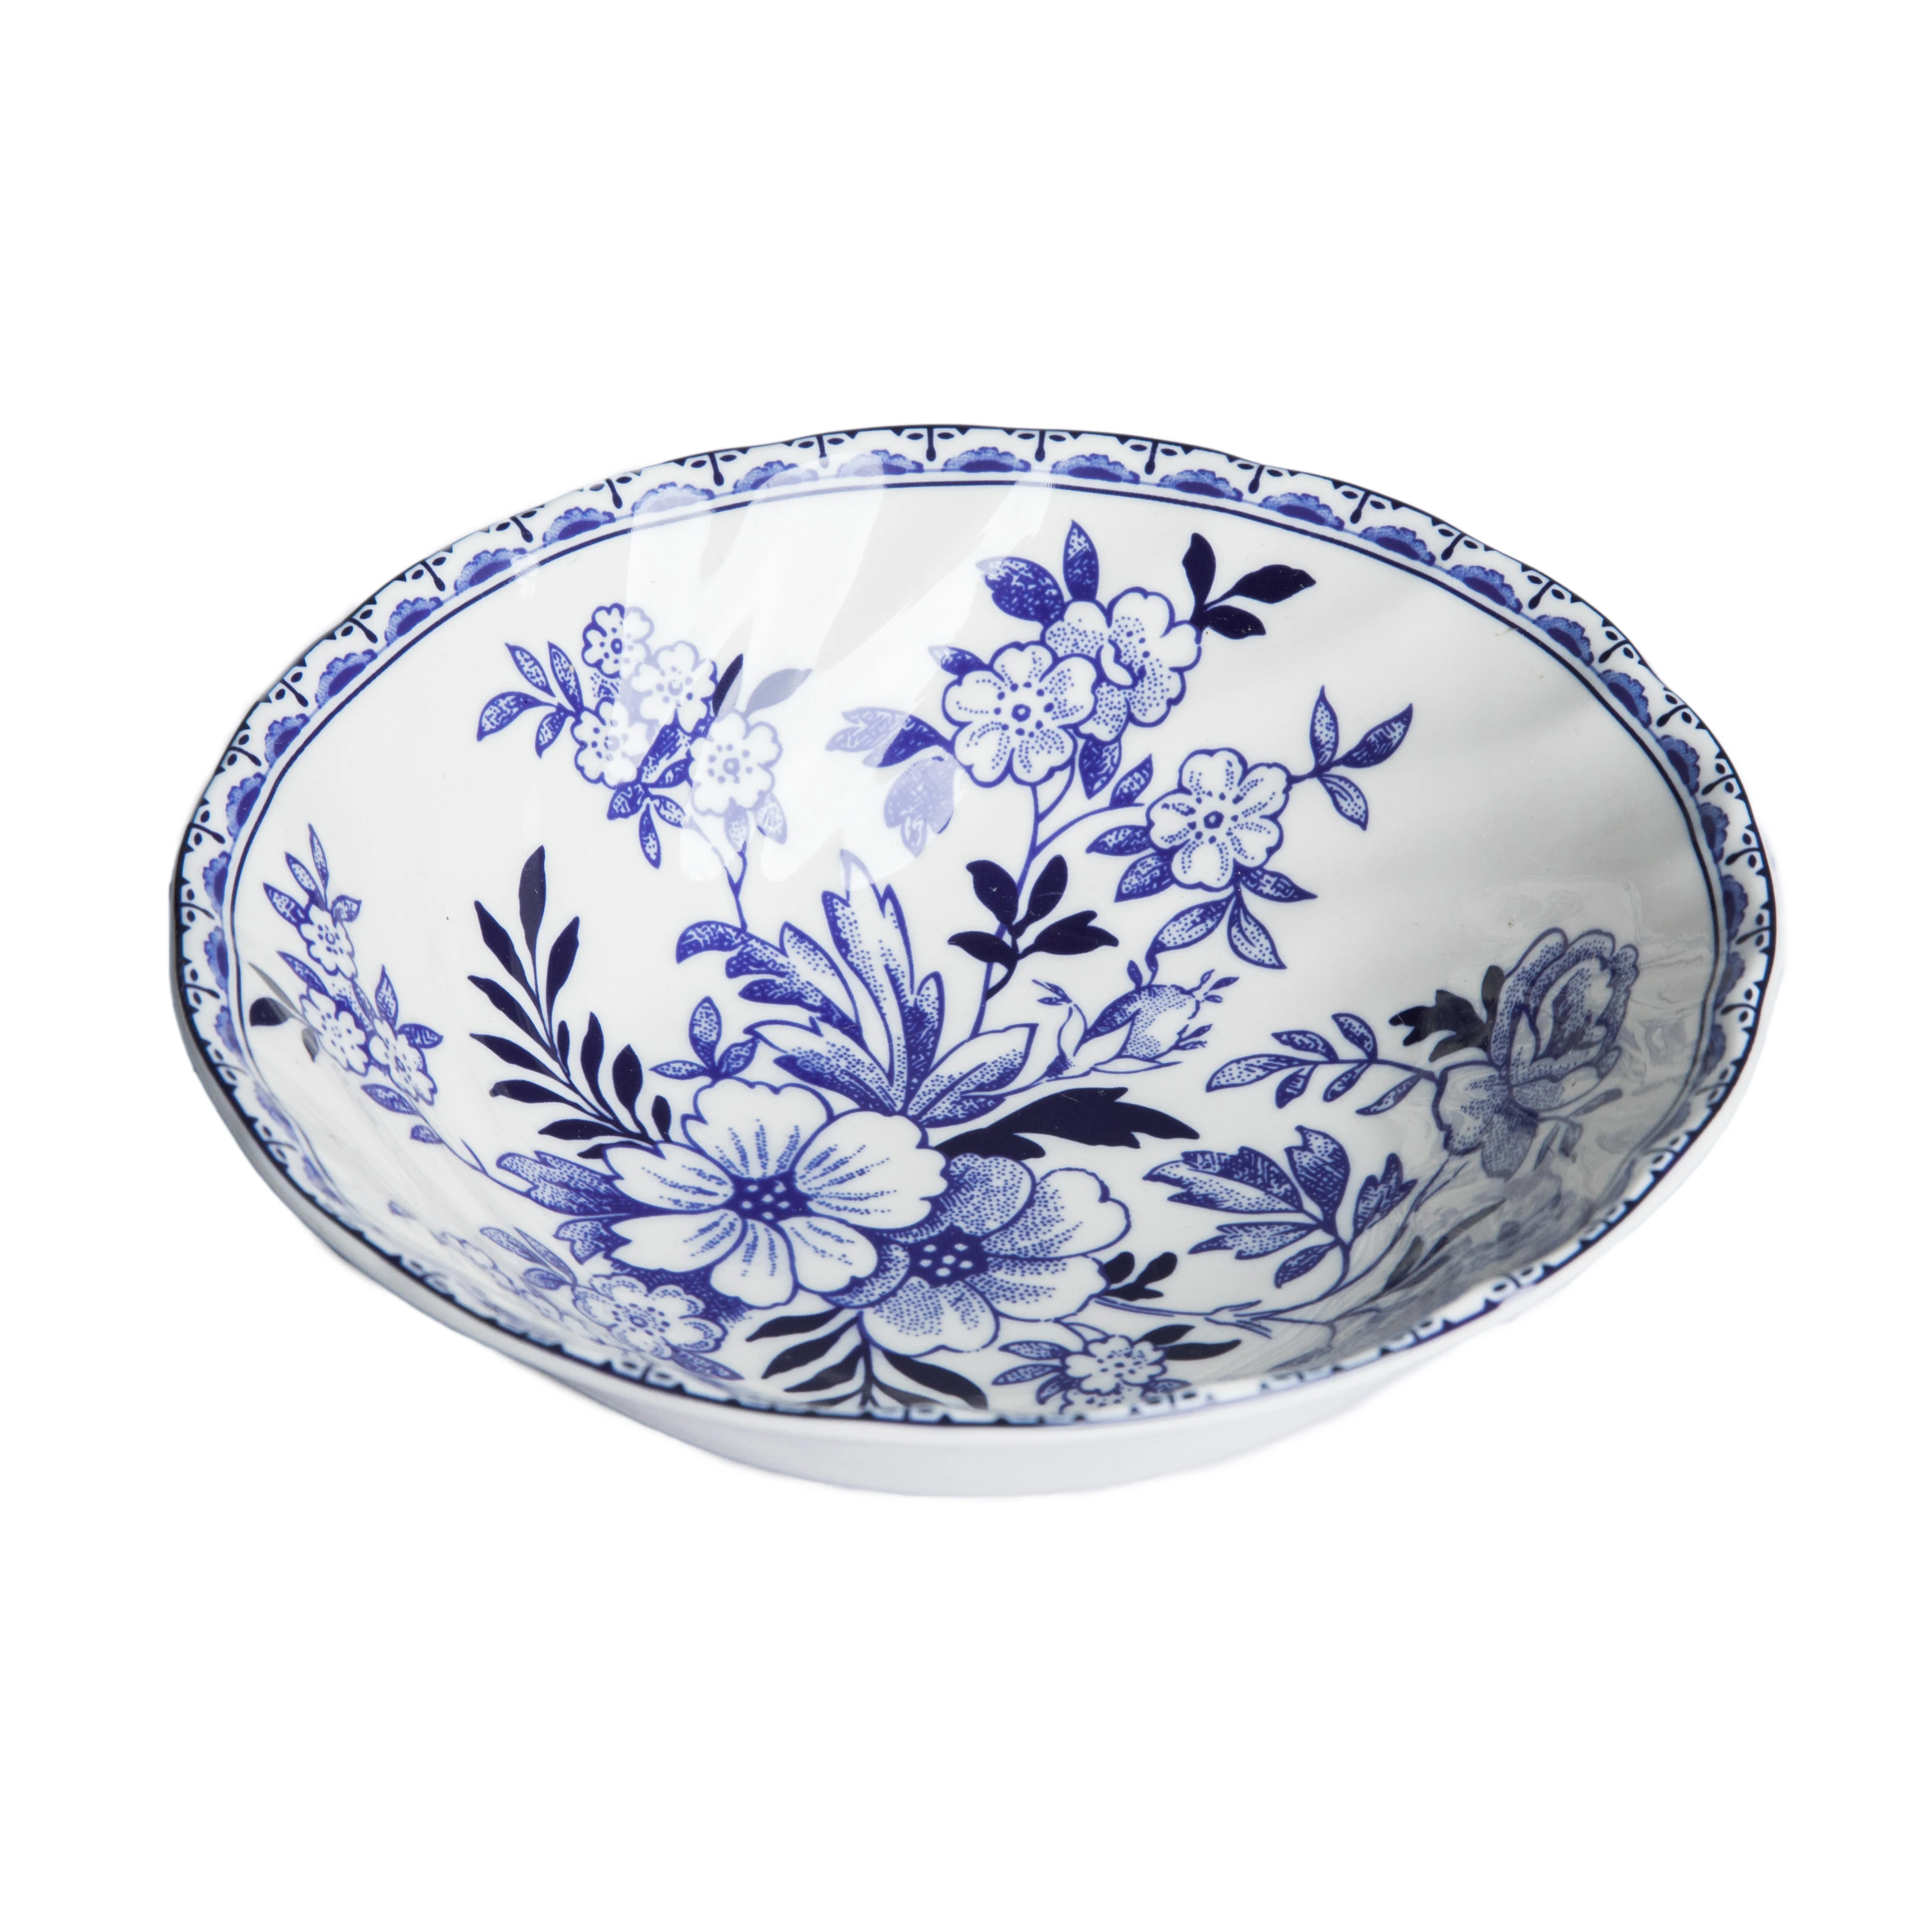 Экспорт Великобритании Бытовая Посуда и тарелки наборы синий и белый керамика s лаконичная Бытовая маленькая тарелка для стейков керамическая Теллер пластина